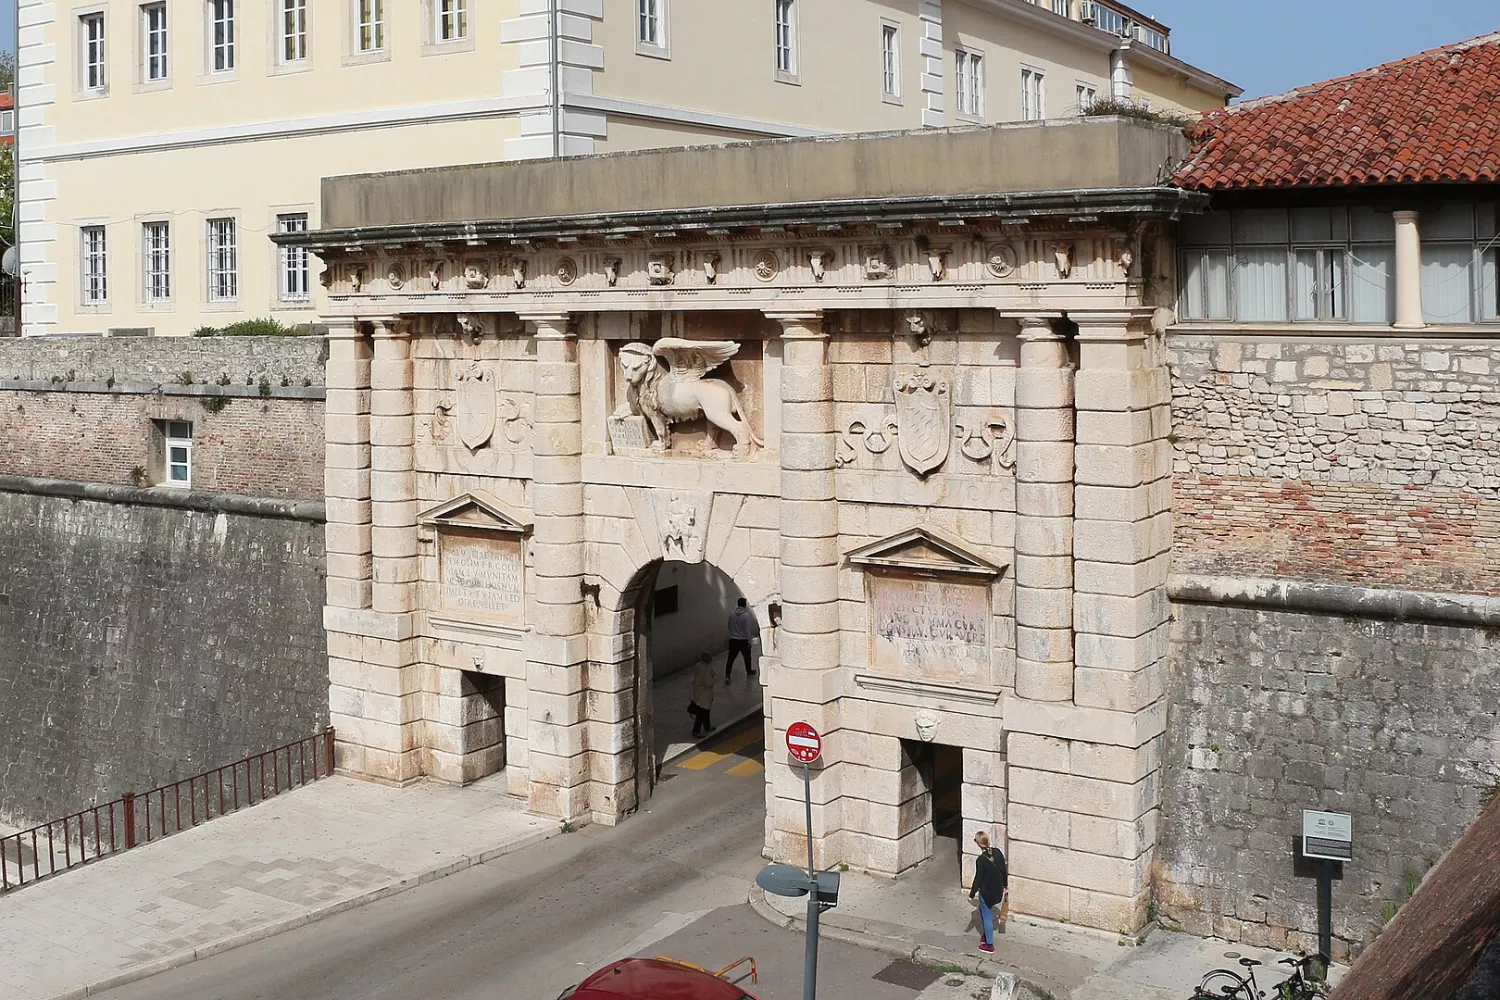 Land Gate, Zadar, Croatia